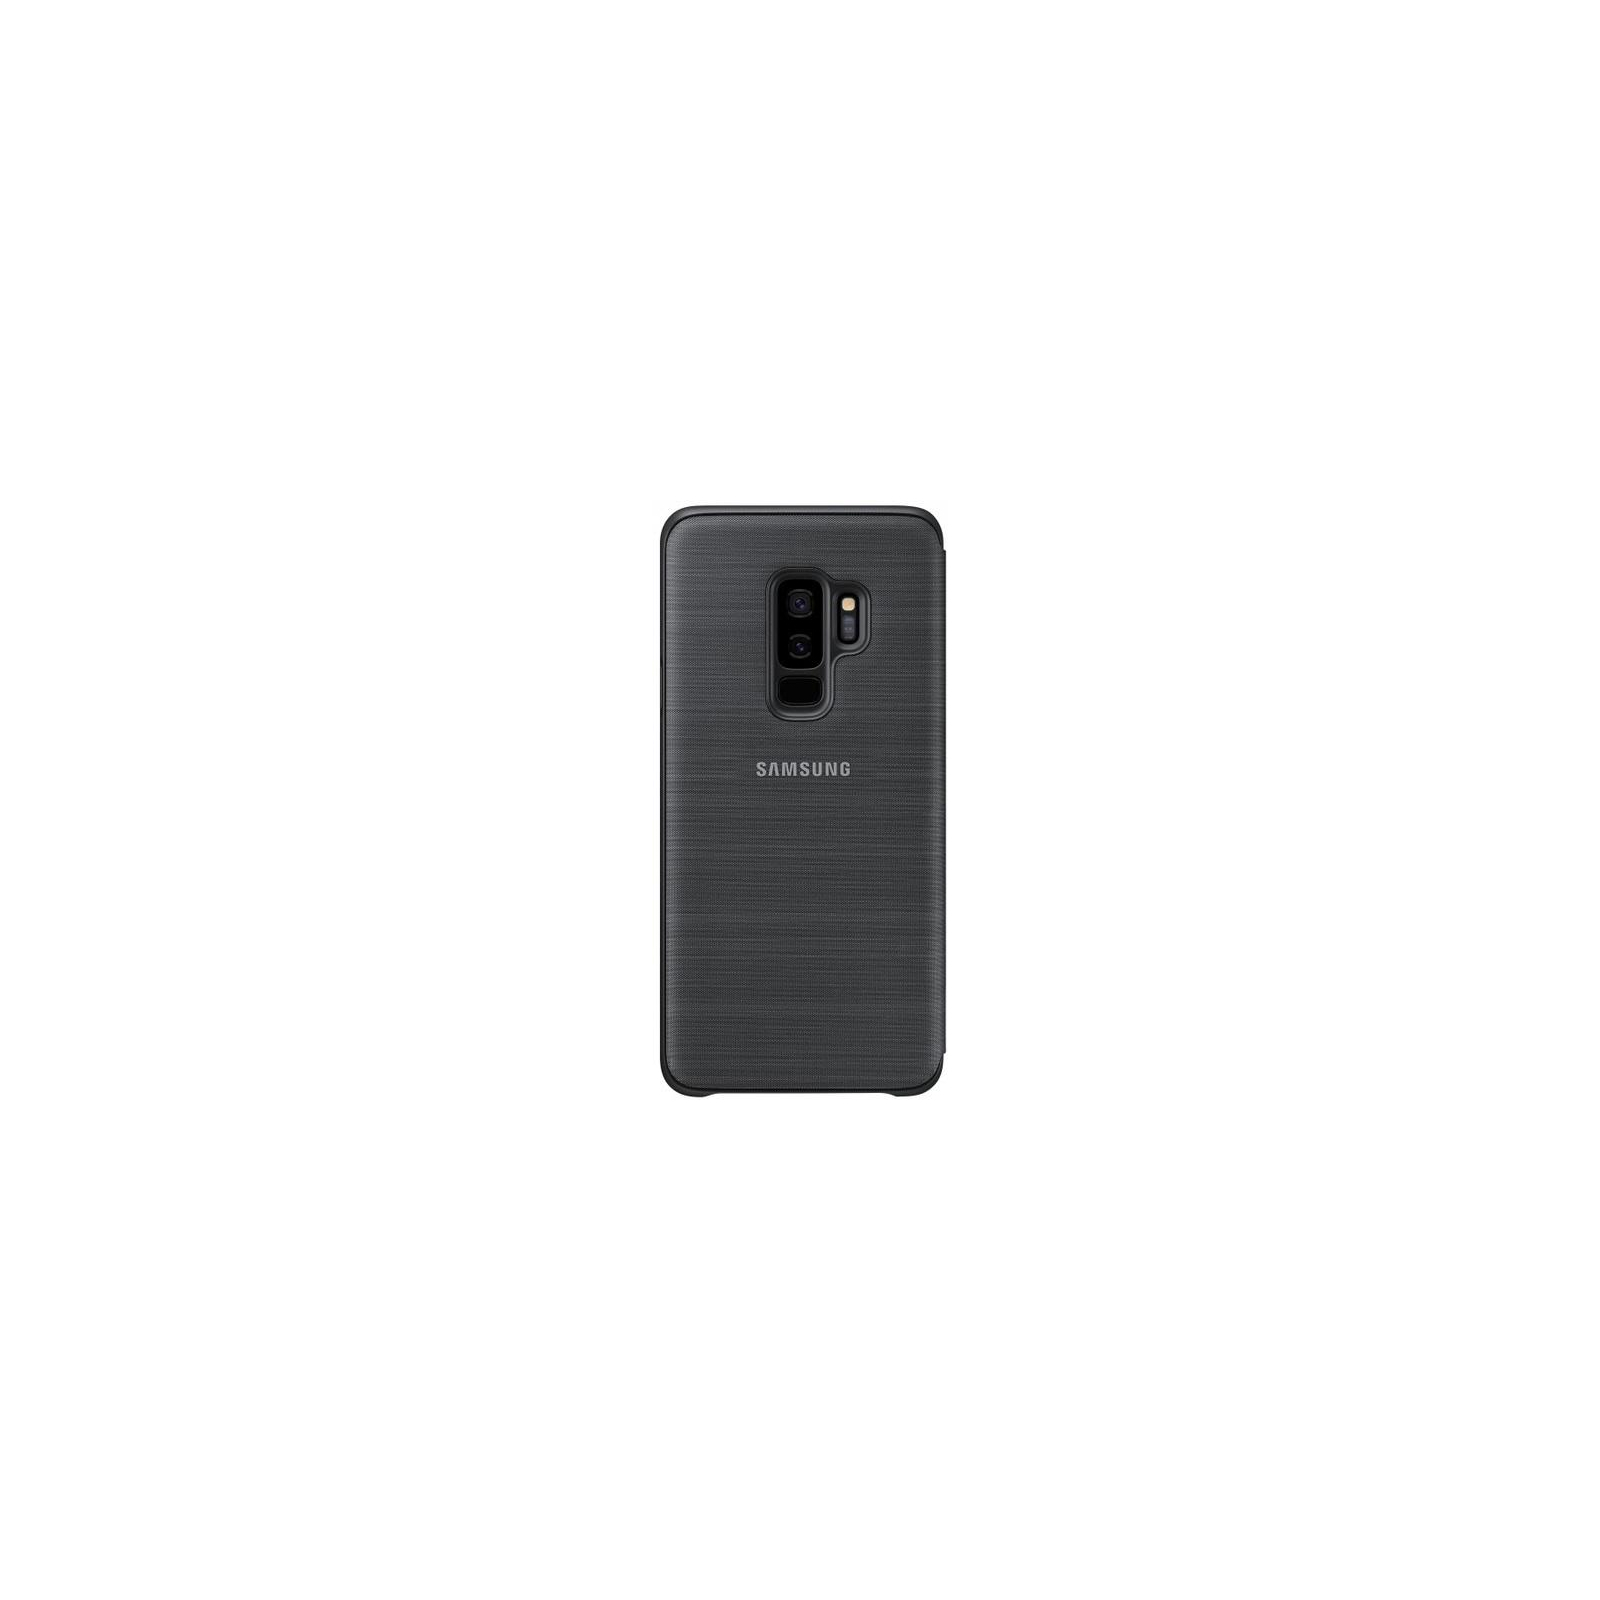 Чехол для мобильного телефона Samsung для Galaxy S9+ (G965) LED View Cover Black (EF-NG965PBEGRU) изображение 4